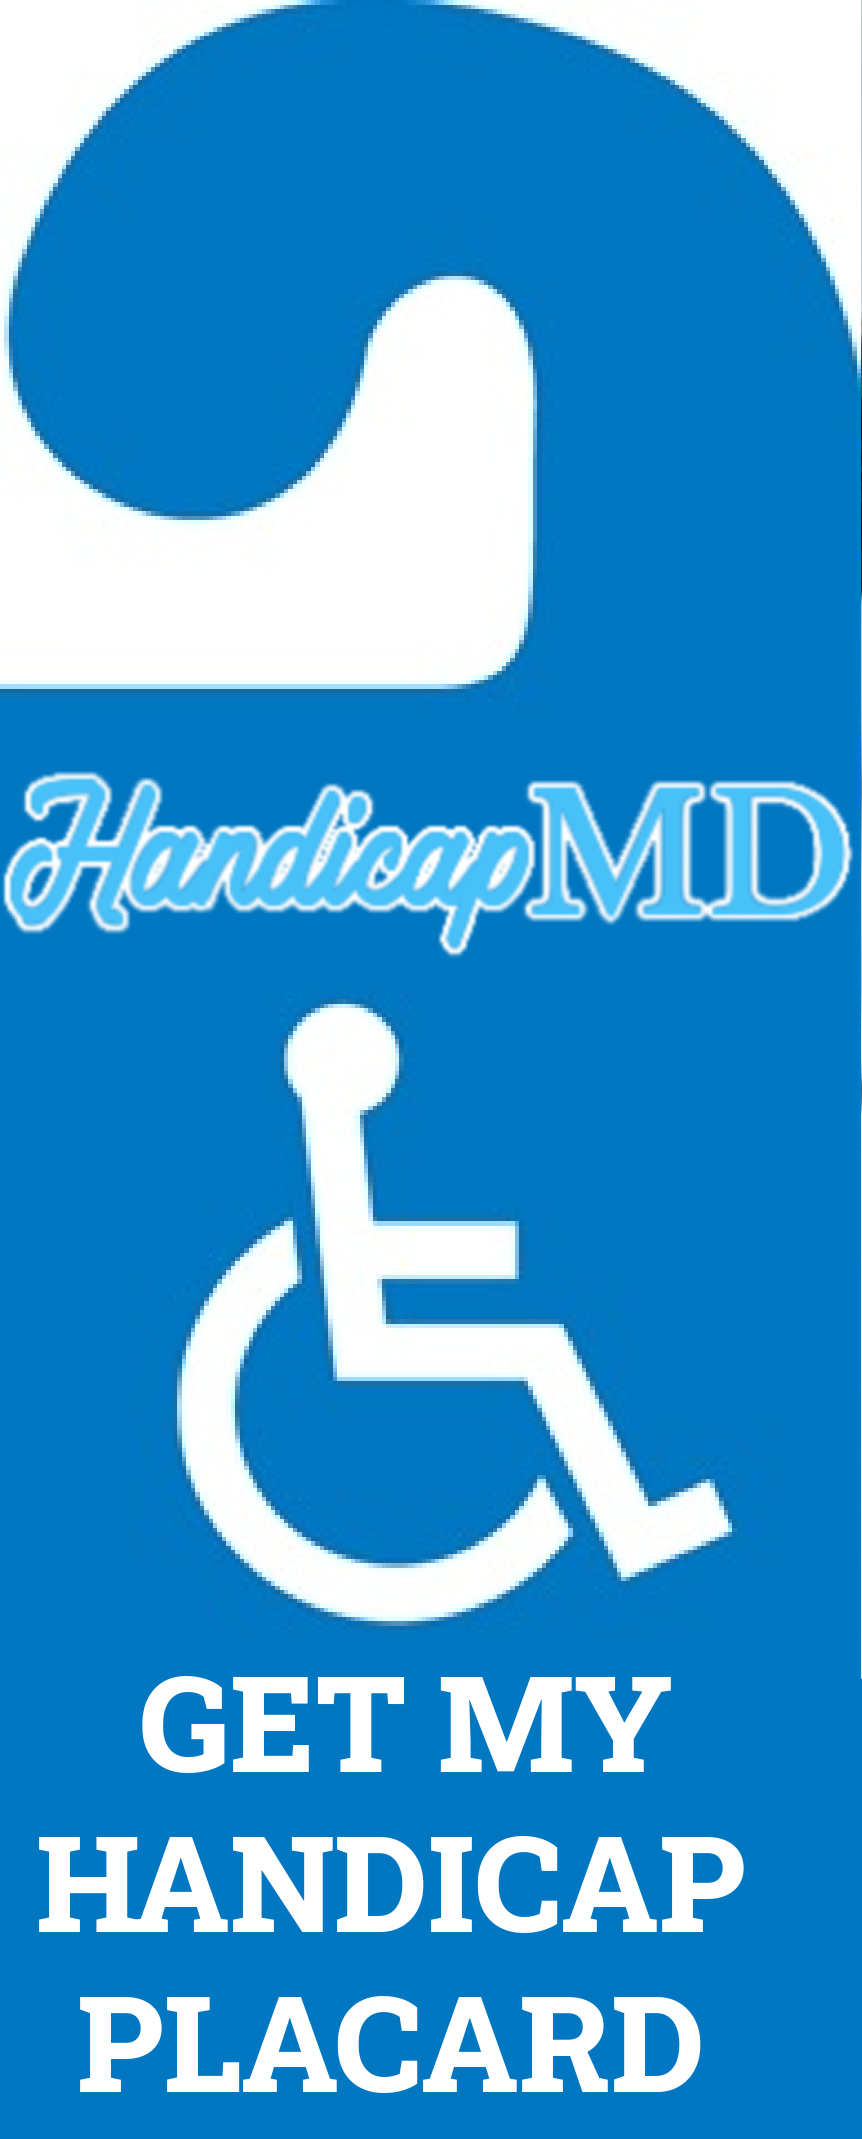 Online Guide to Handicap Parking in Missouri